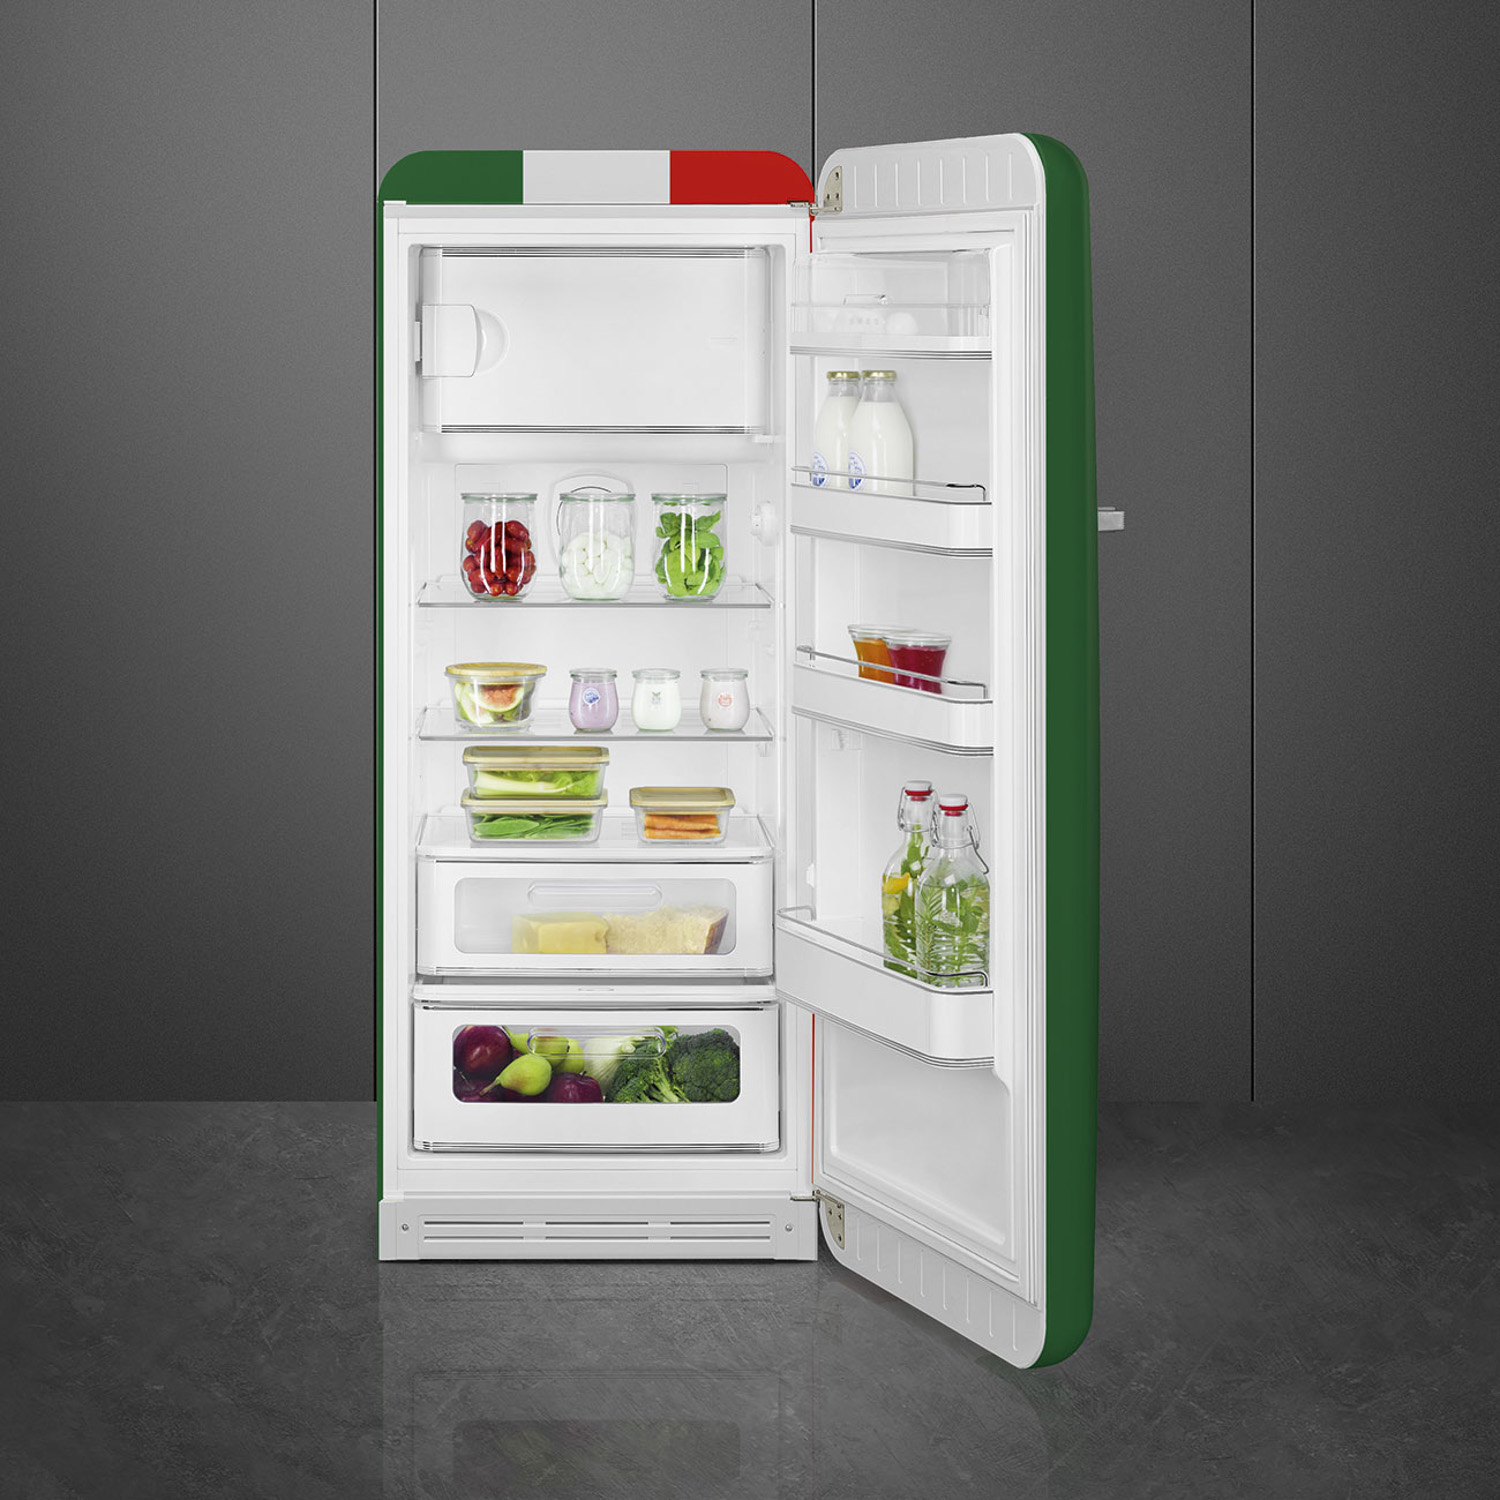 Tủ lạnh SMEG, cửa đơn, độc lập, 50’S STYLE FAB28RDIT5 535.14.537 thiết kế tinh tế, đơn giản nhưng sang trọng